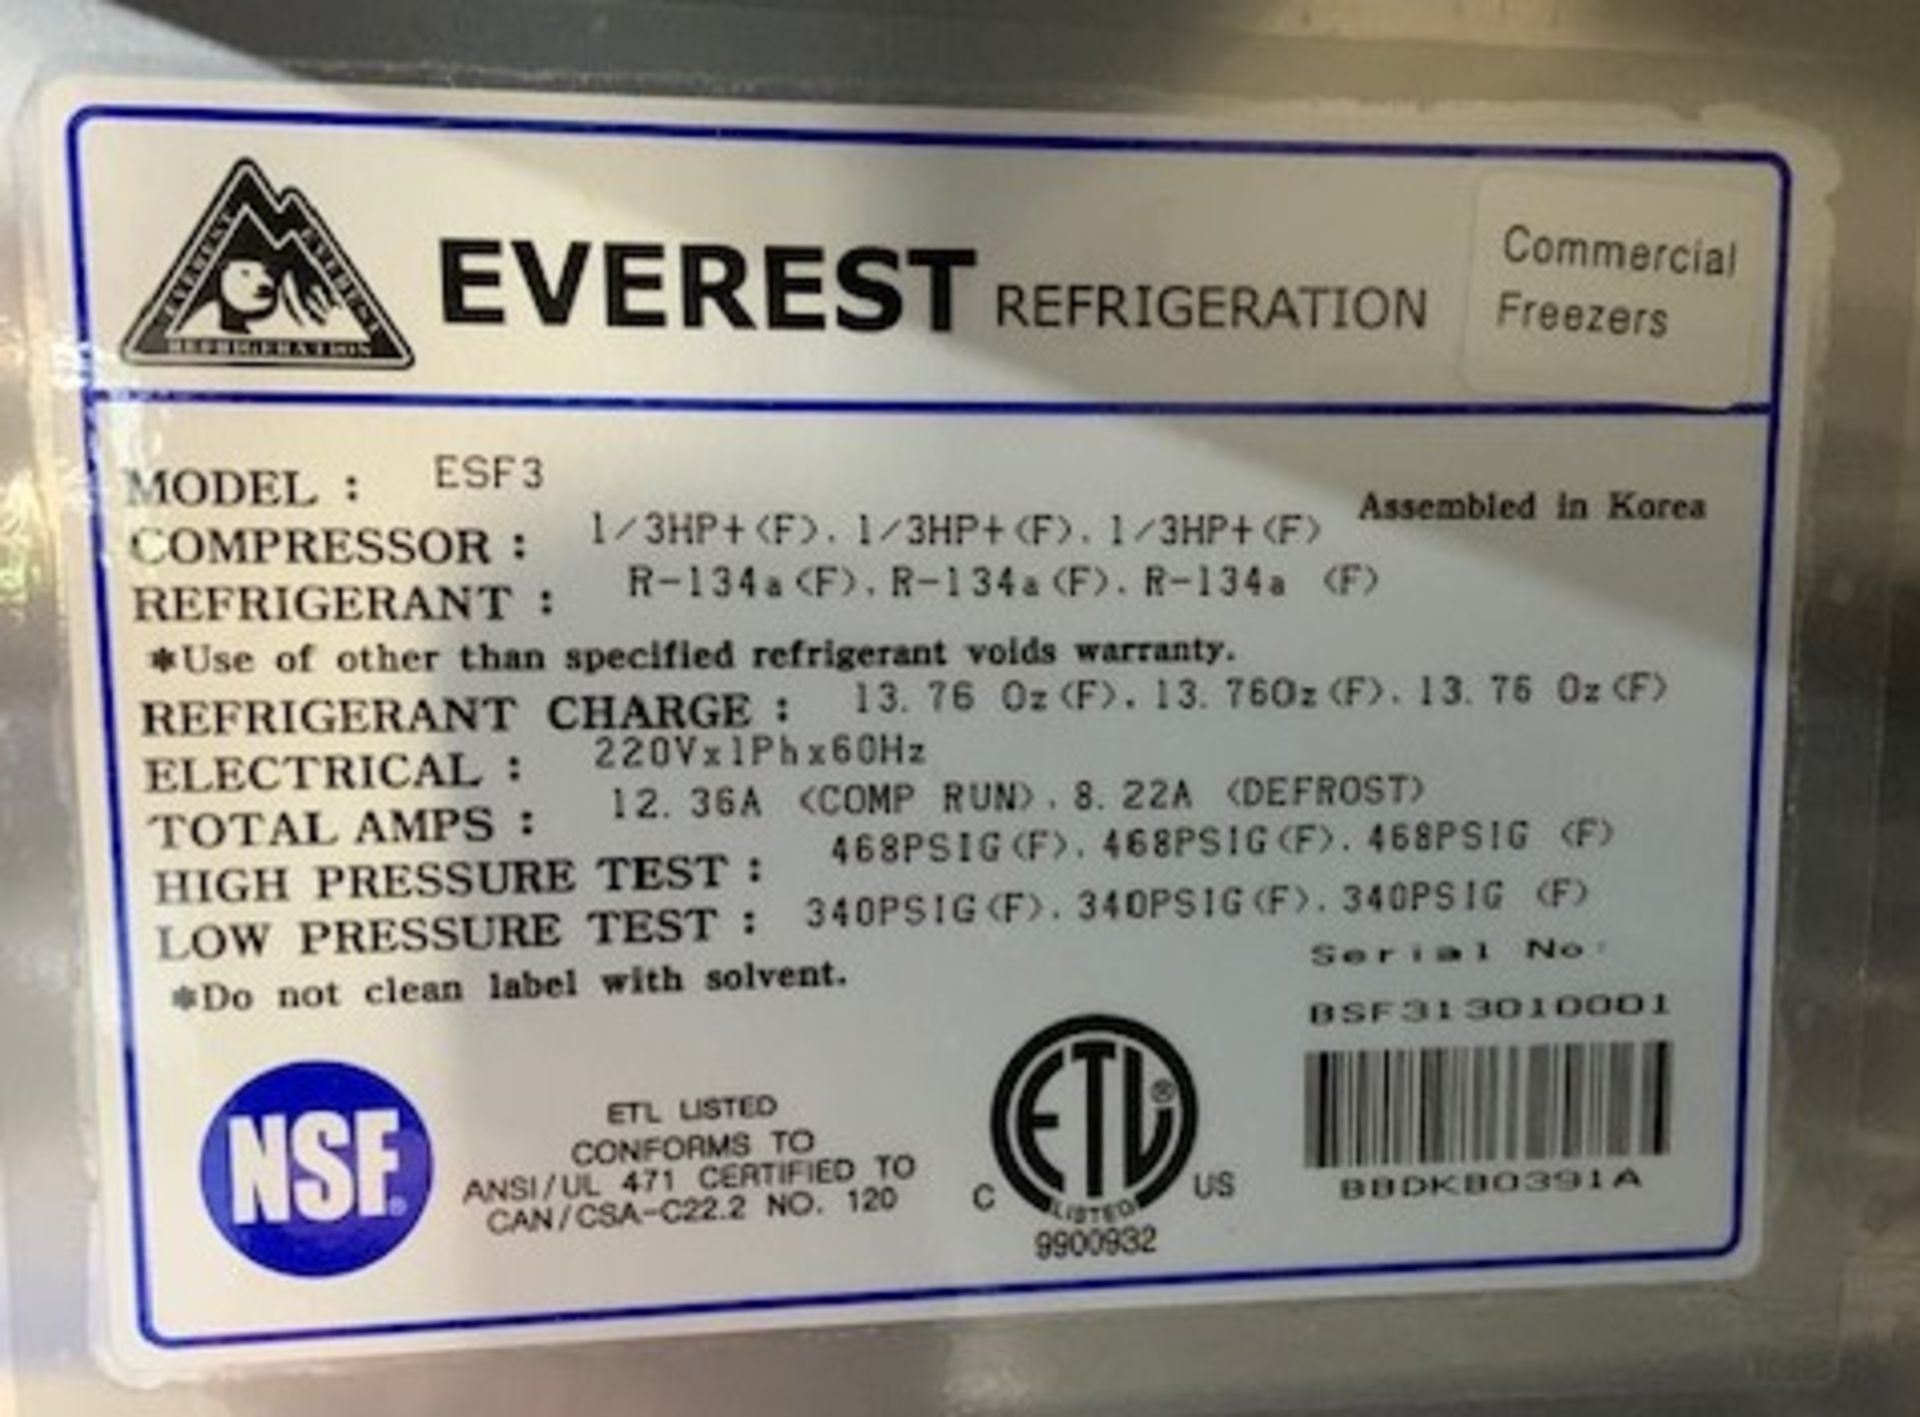 Everest Stainless Steel 3-Door Freezer, Model ESF3 - Image 3 of 3